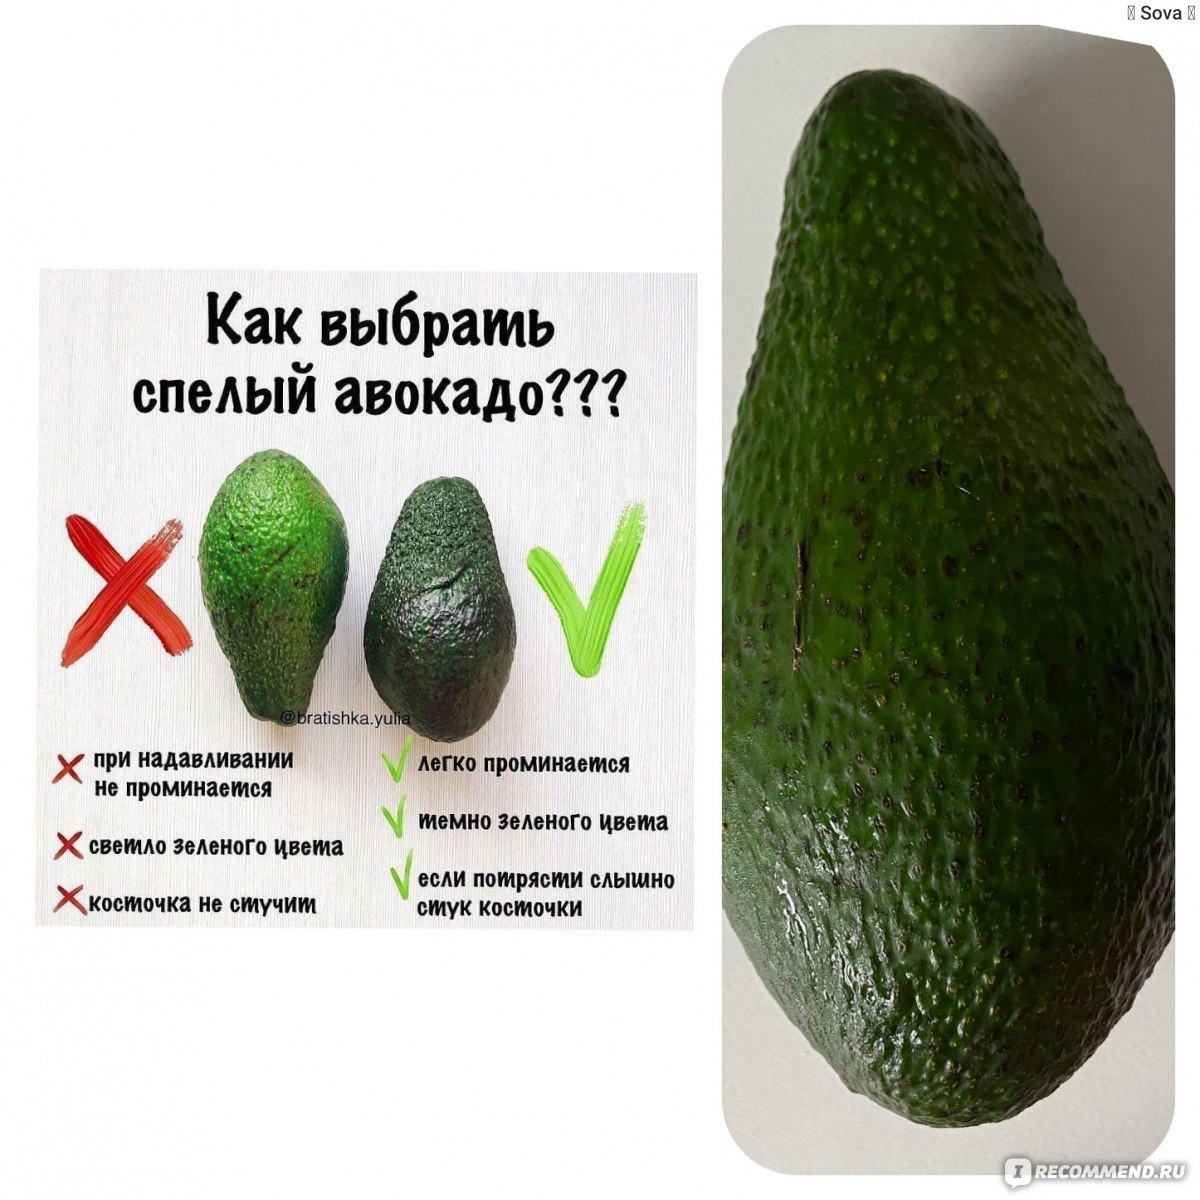 Польза и вред авокадо для организма, при каких болезнях нельзя, как правильно есть авокадо